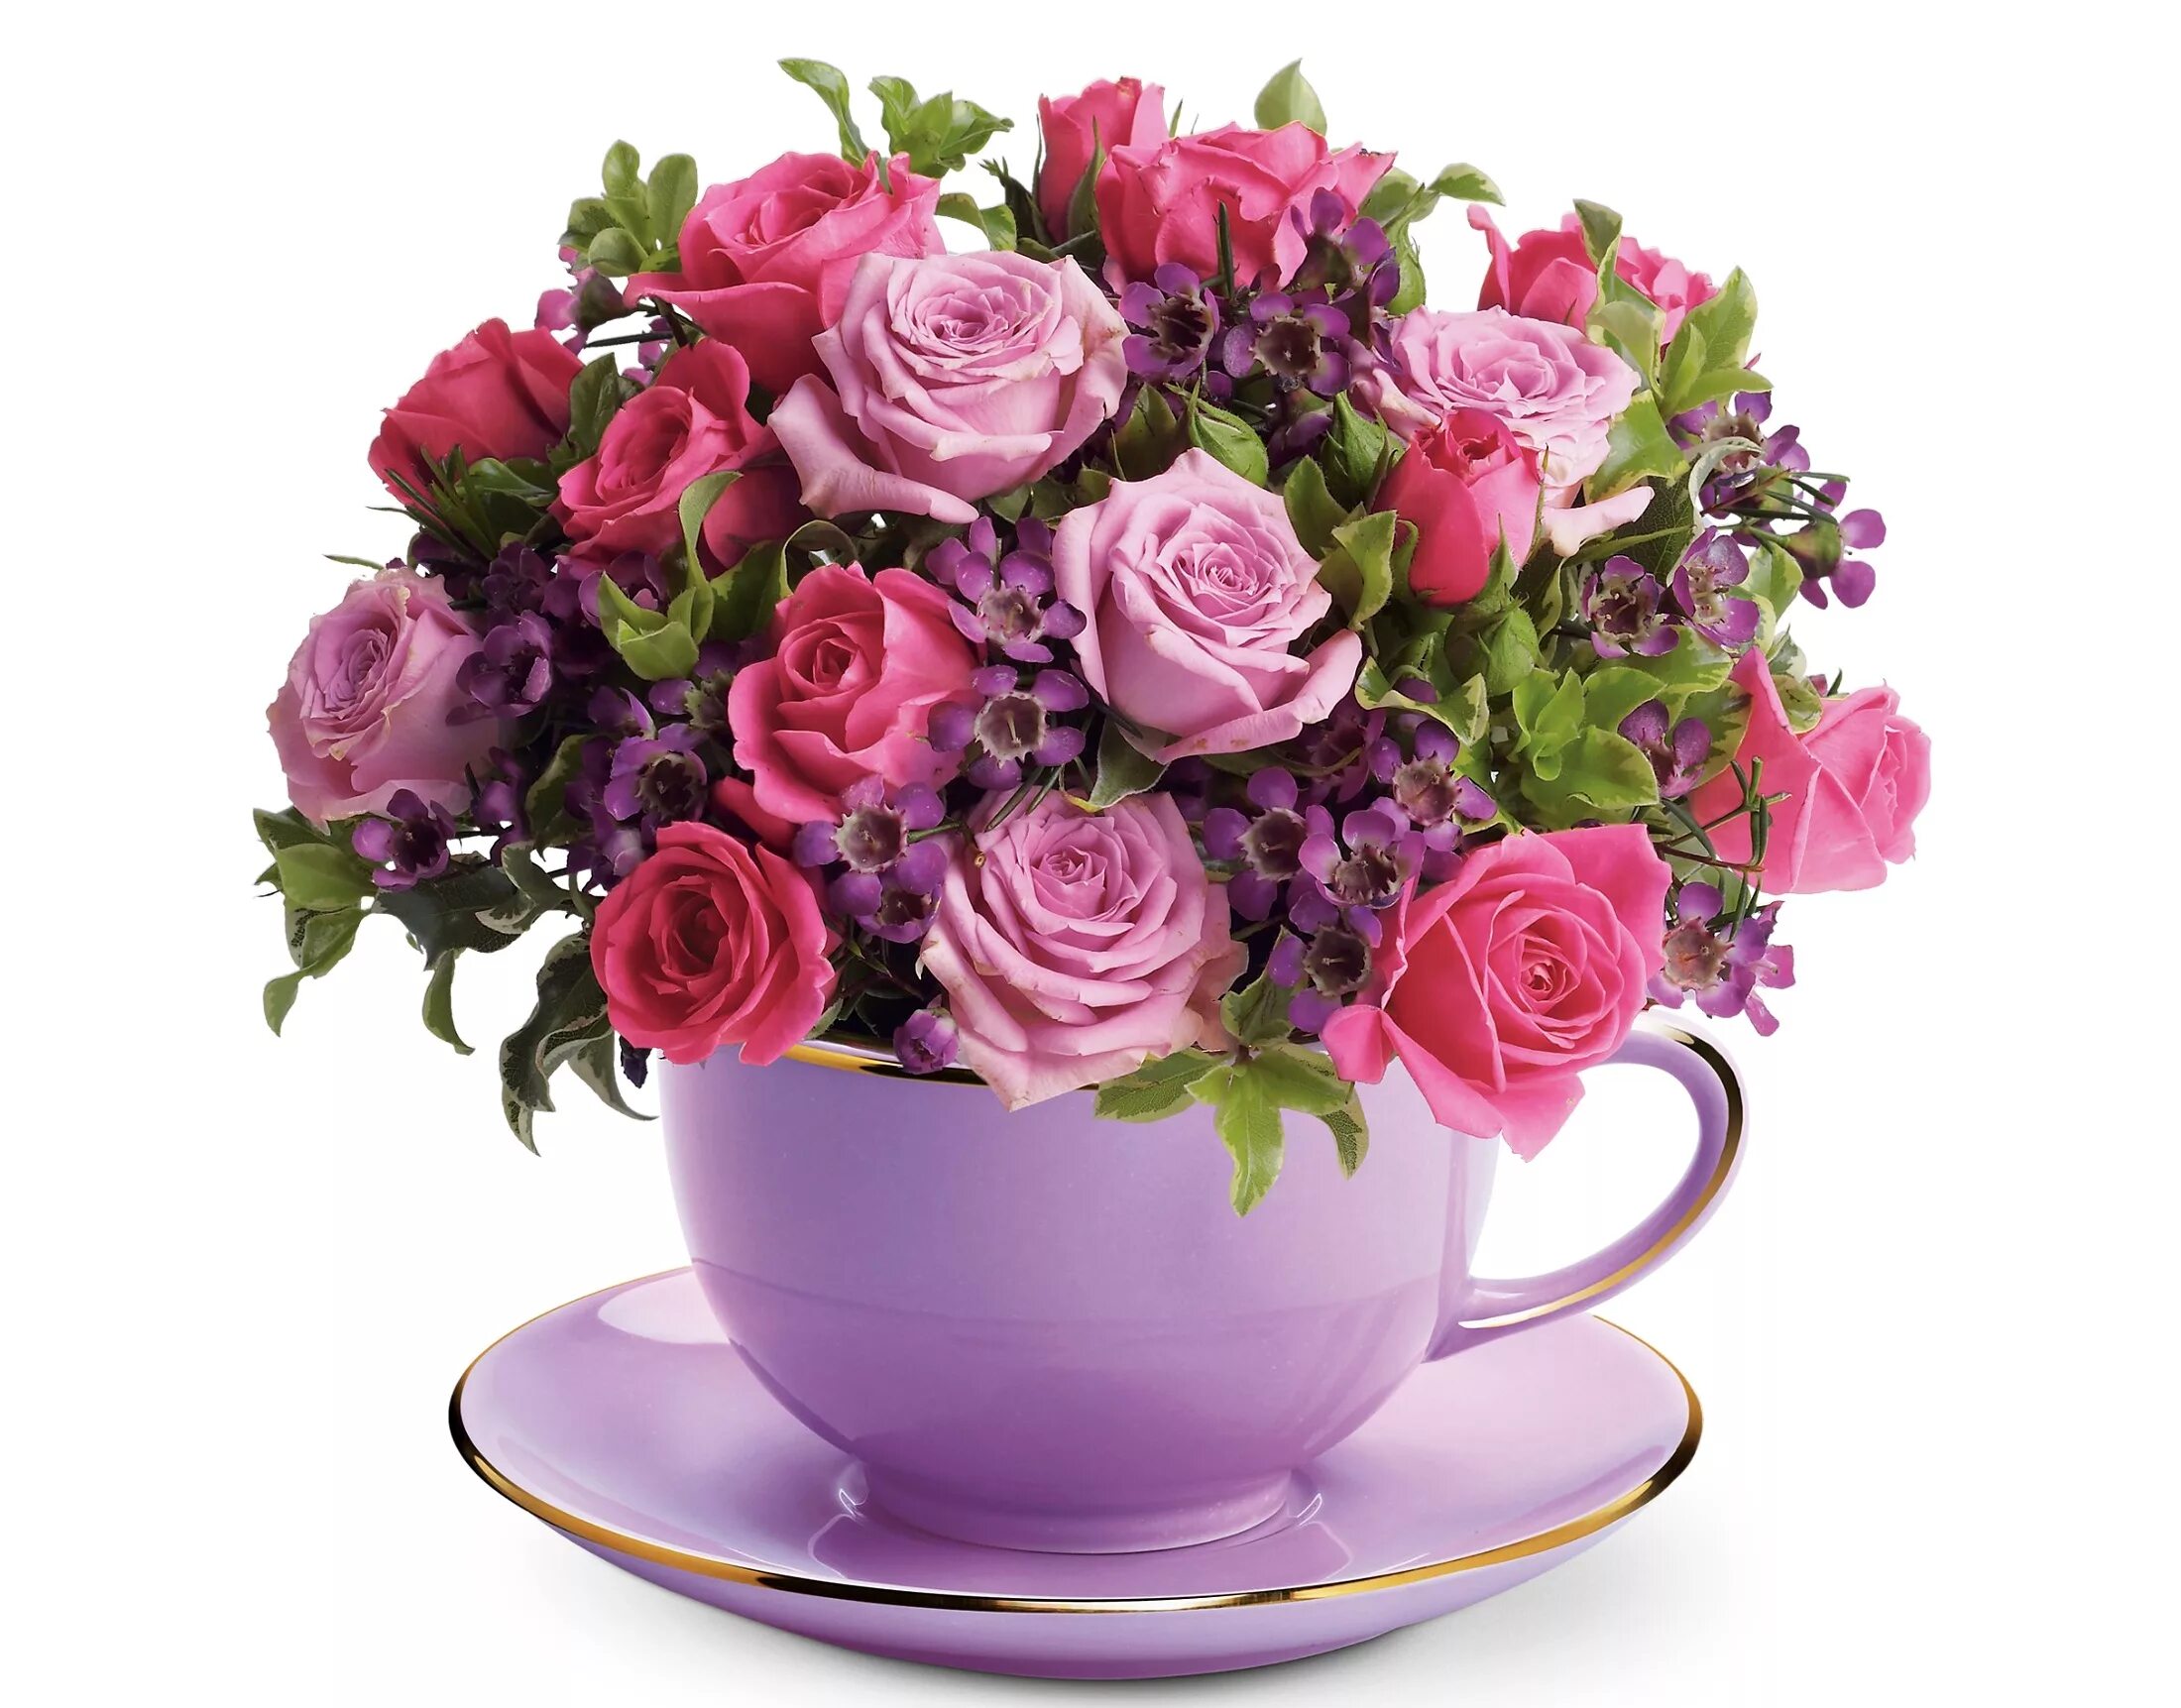 Букет в чашке. Красивый букет в чашке. Цветы в кружке. Композиция в чашке с цветами. Rose cup